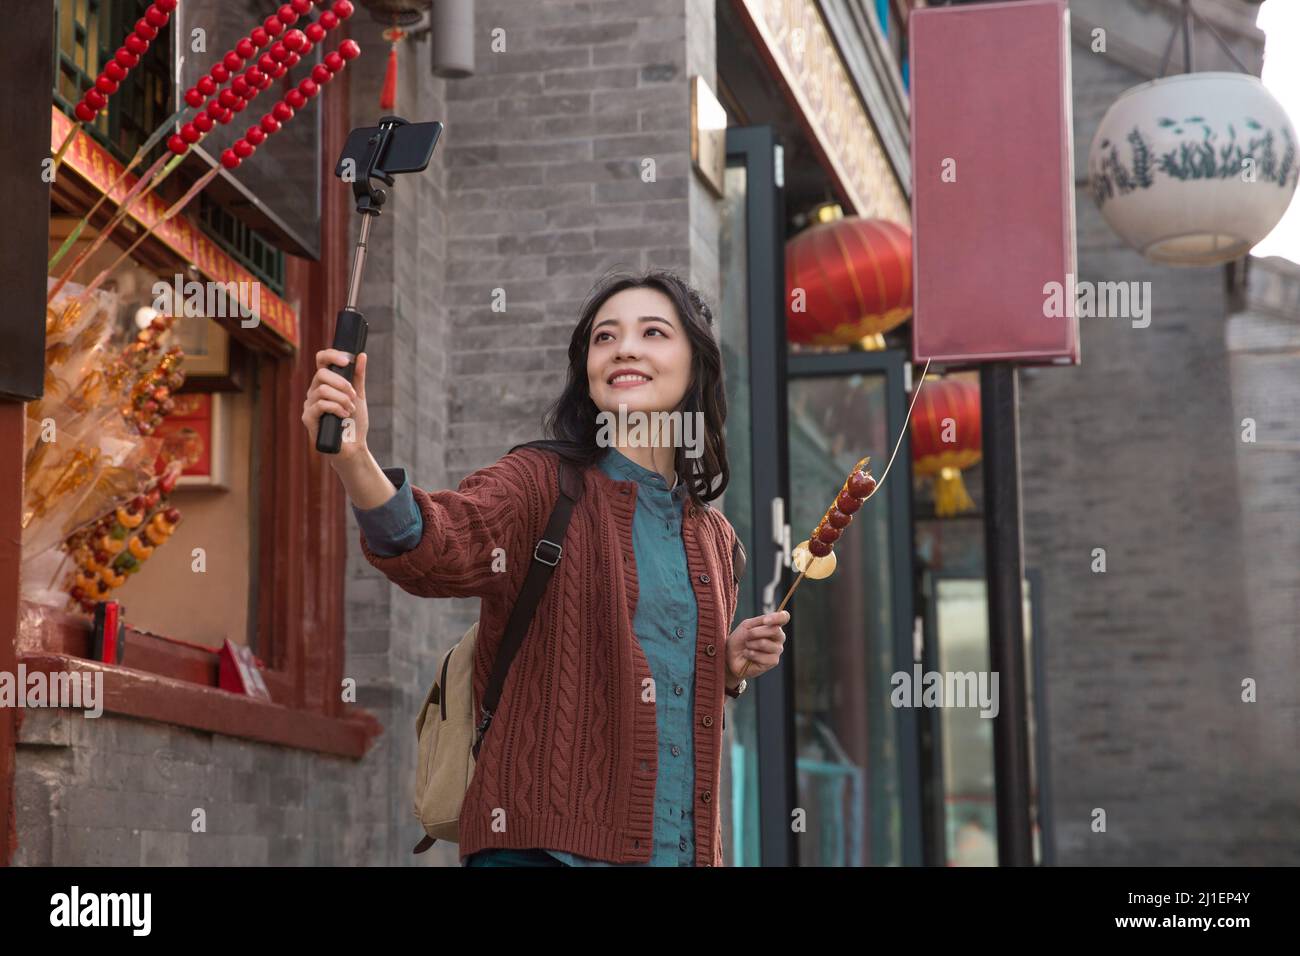 Backpacker-Frau, die Selfie in einem Food-Stand in einer Fußgängerzone im klassischen Stil macht, mit Tanghulu und Tangren - Stockfoto Stockfoto